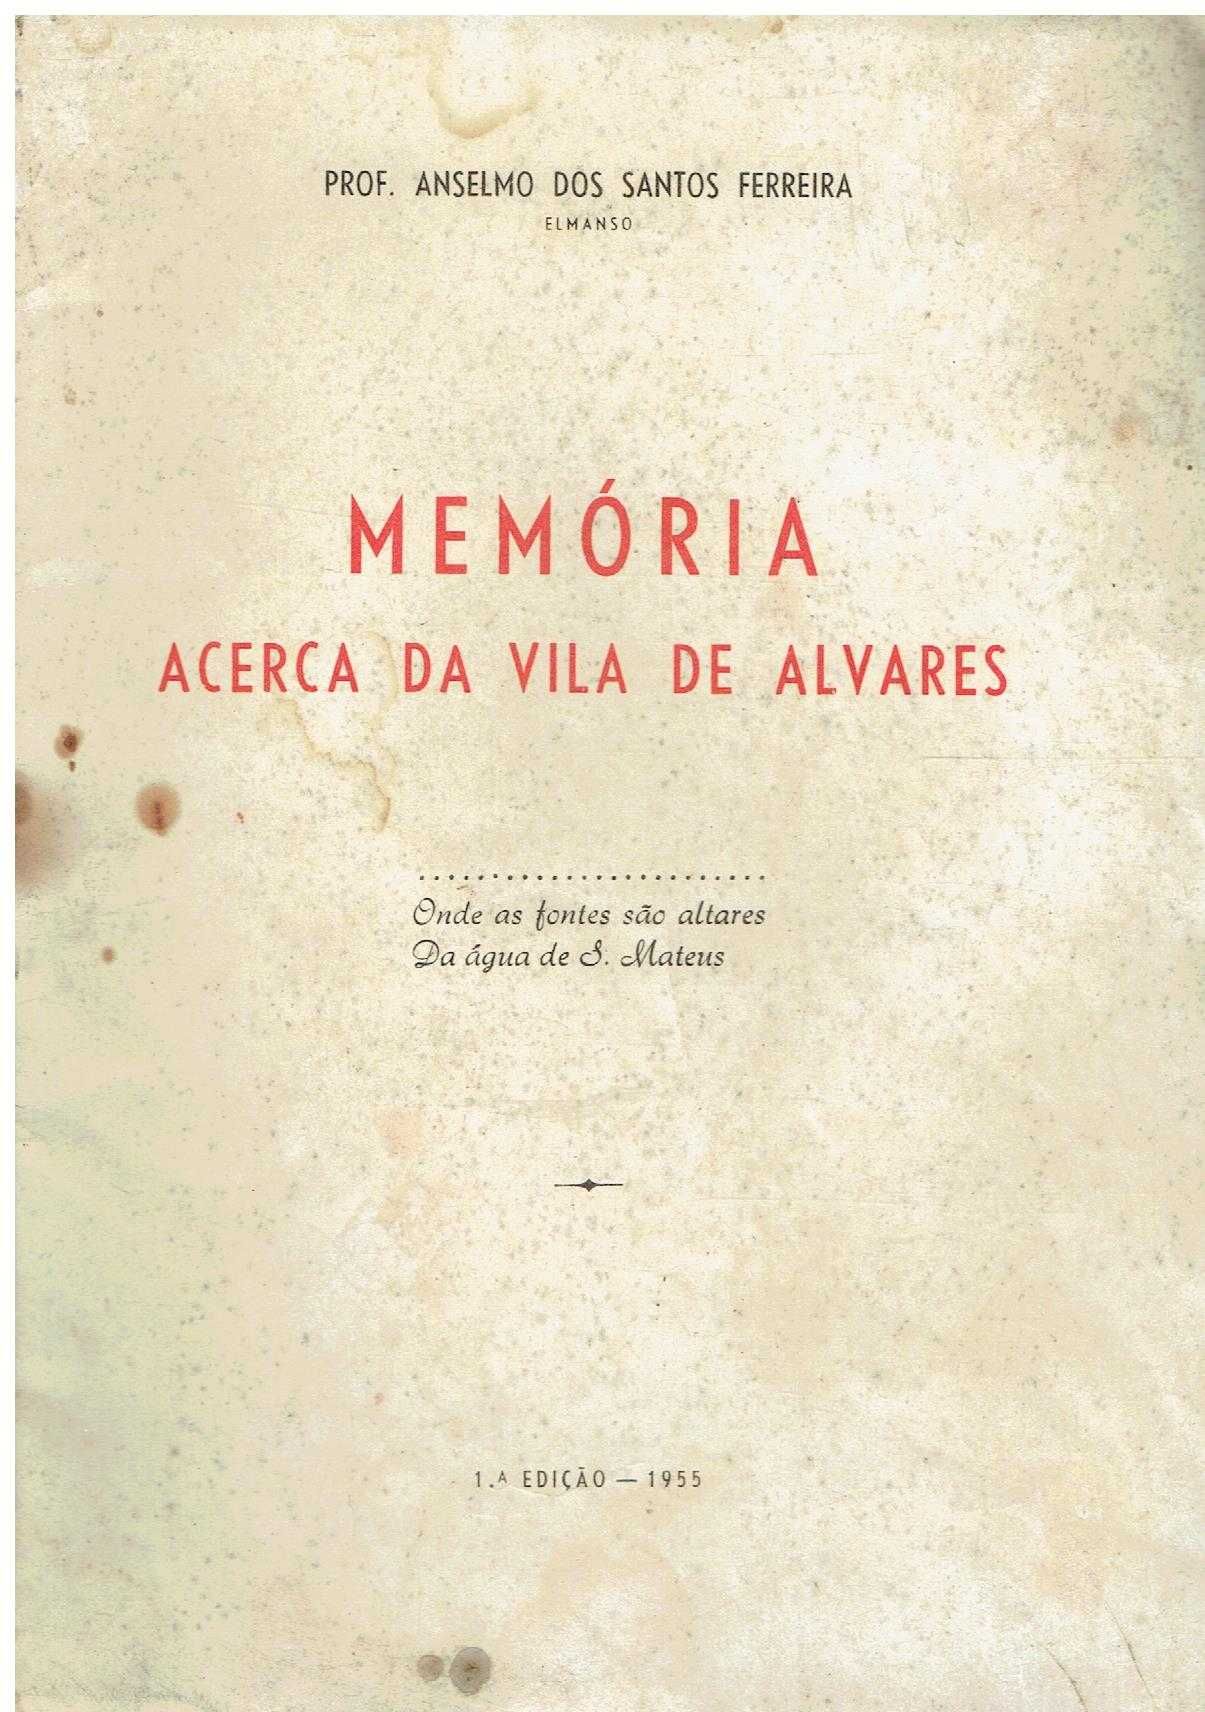 8304
Memória ácerca da Vila de Alvares  
de Anselmo  Ferreira.